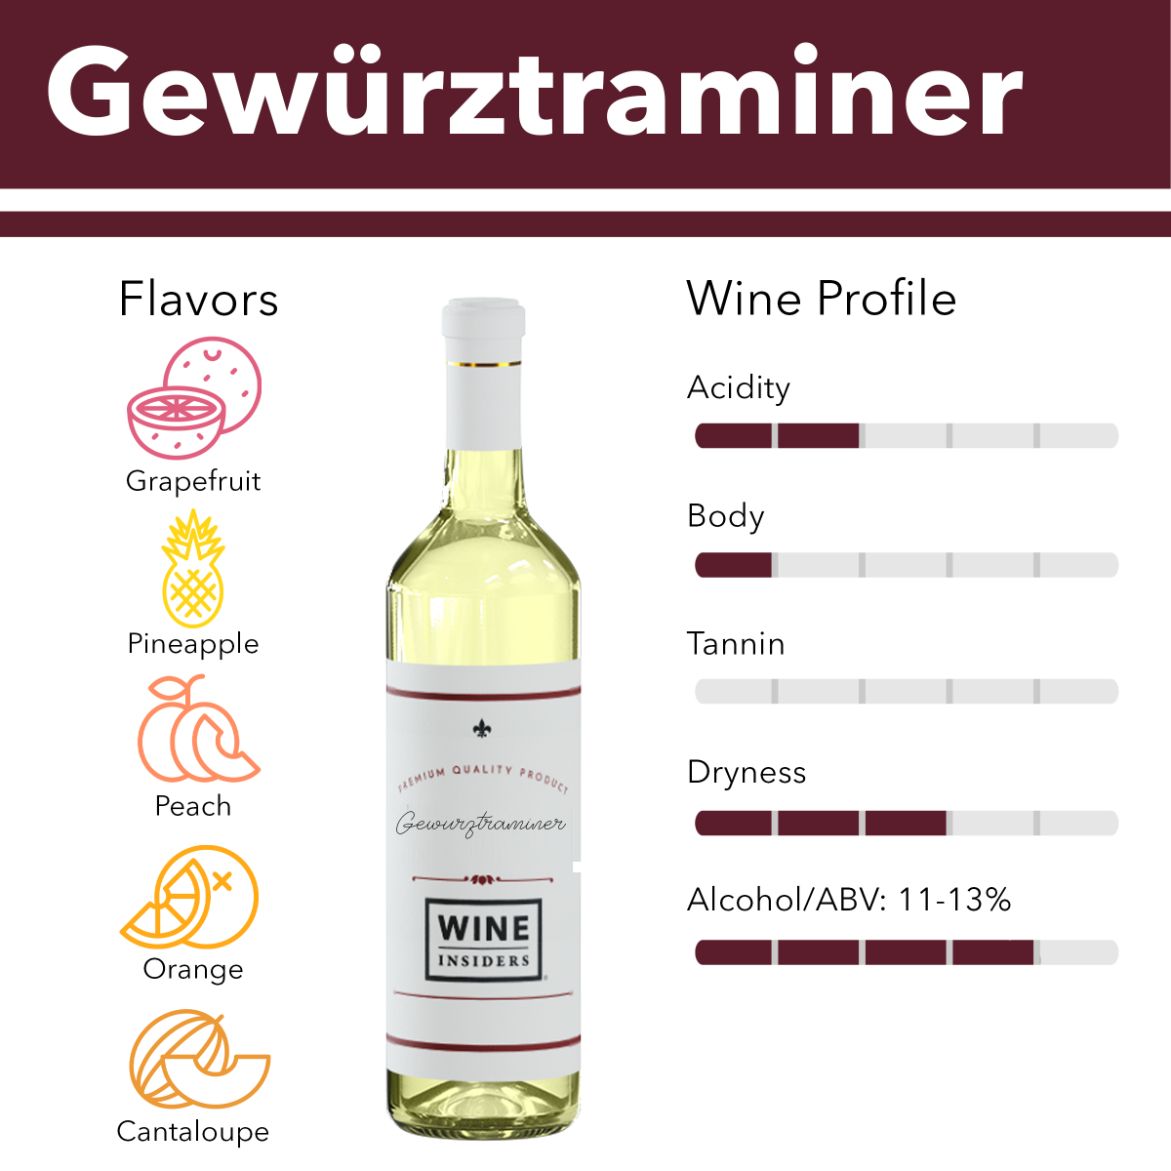 Gewurztraminer wine flavor profile.